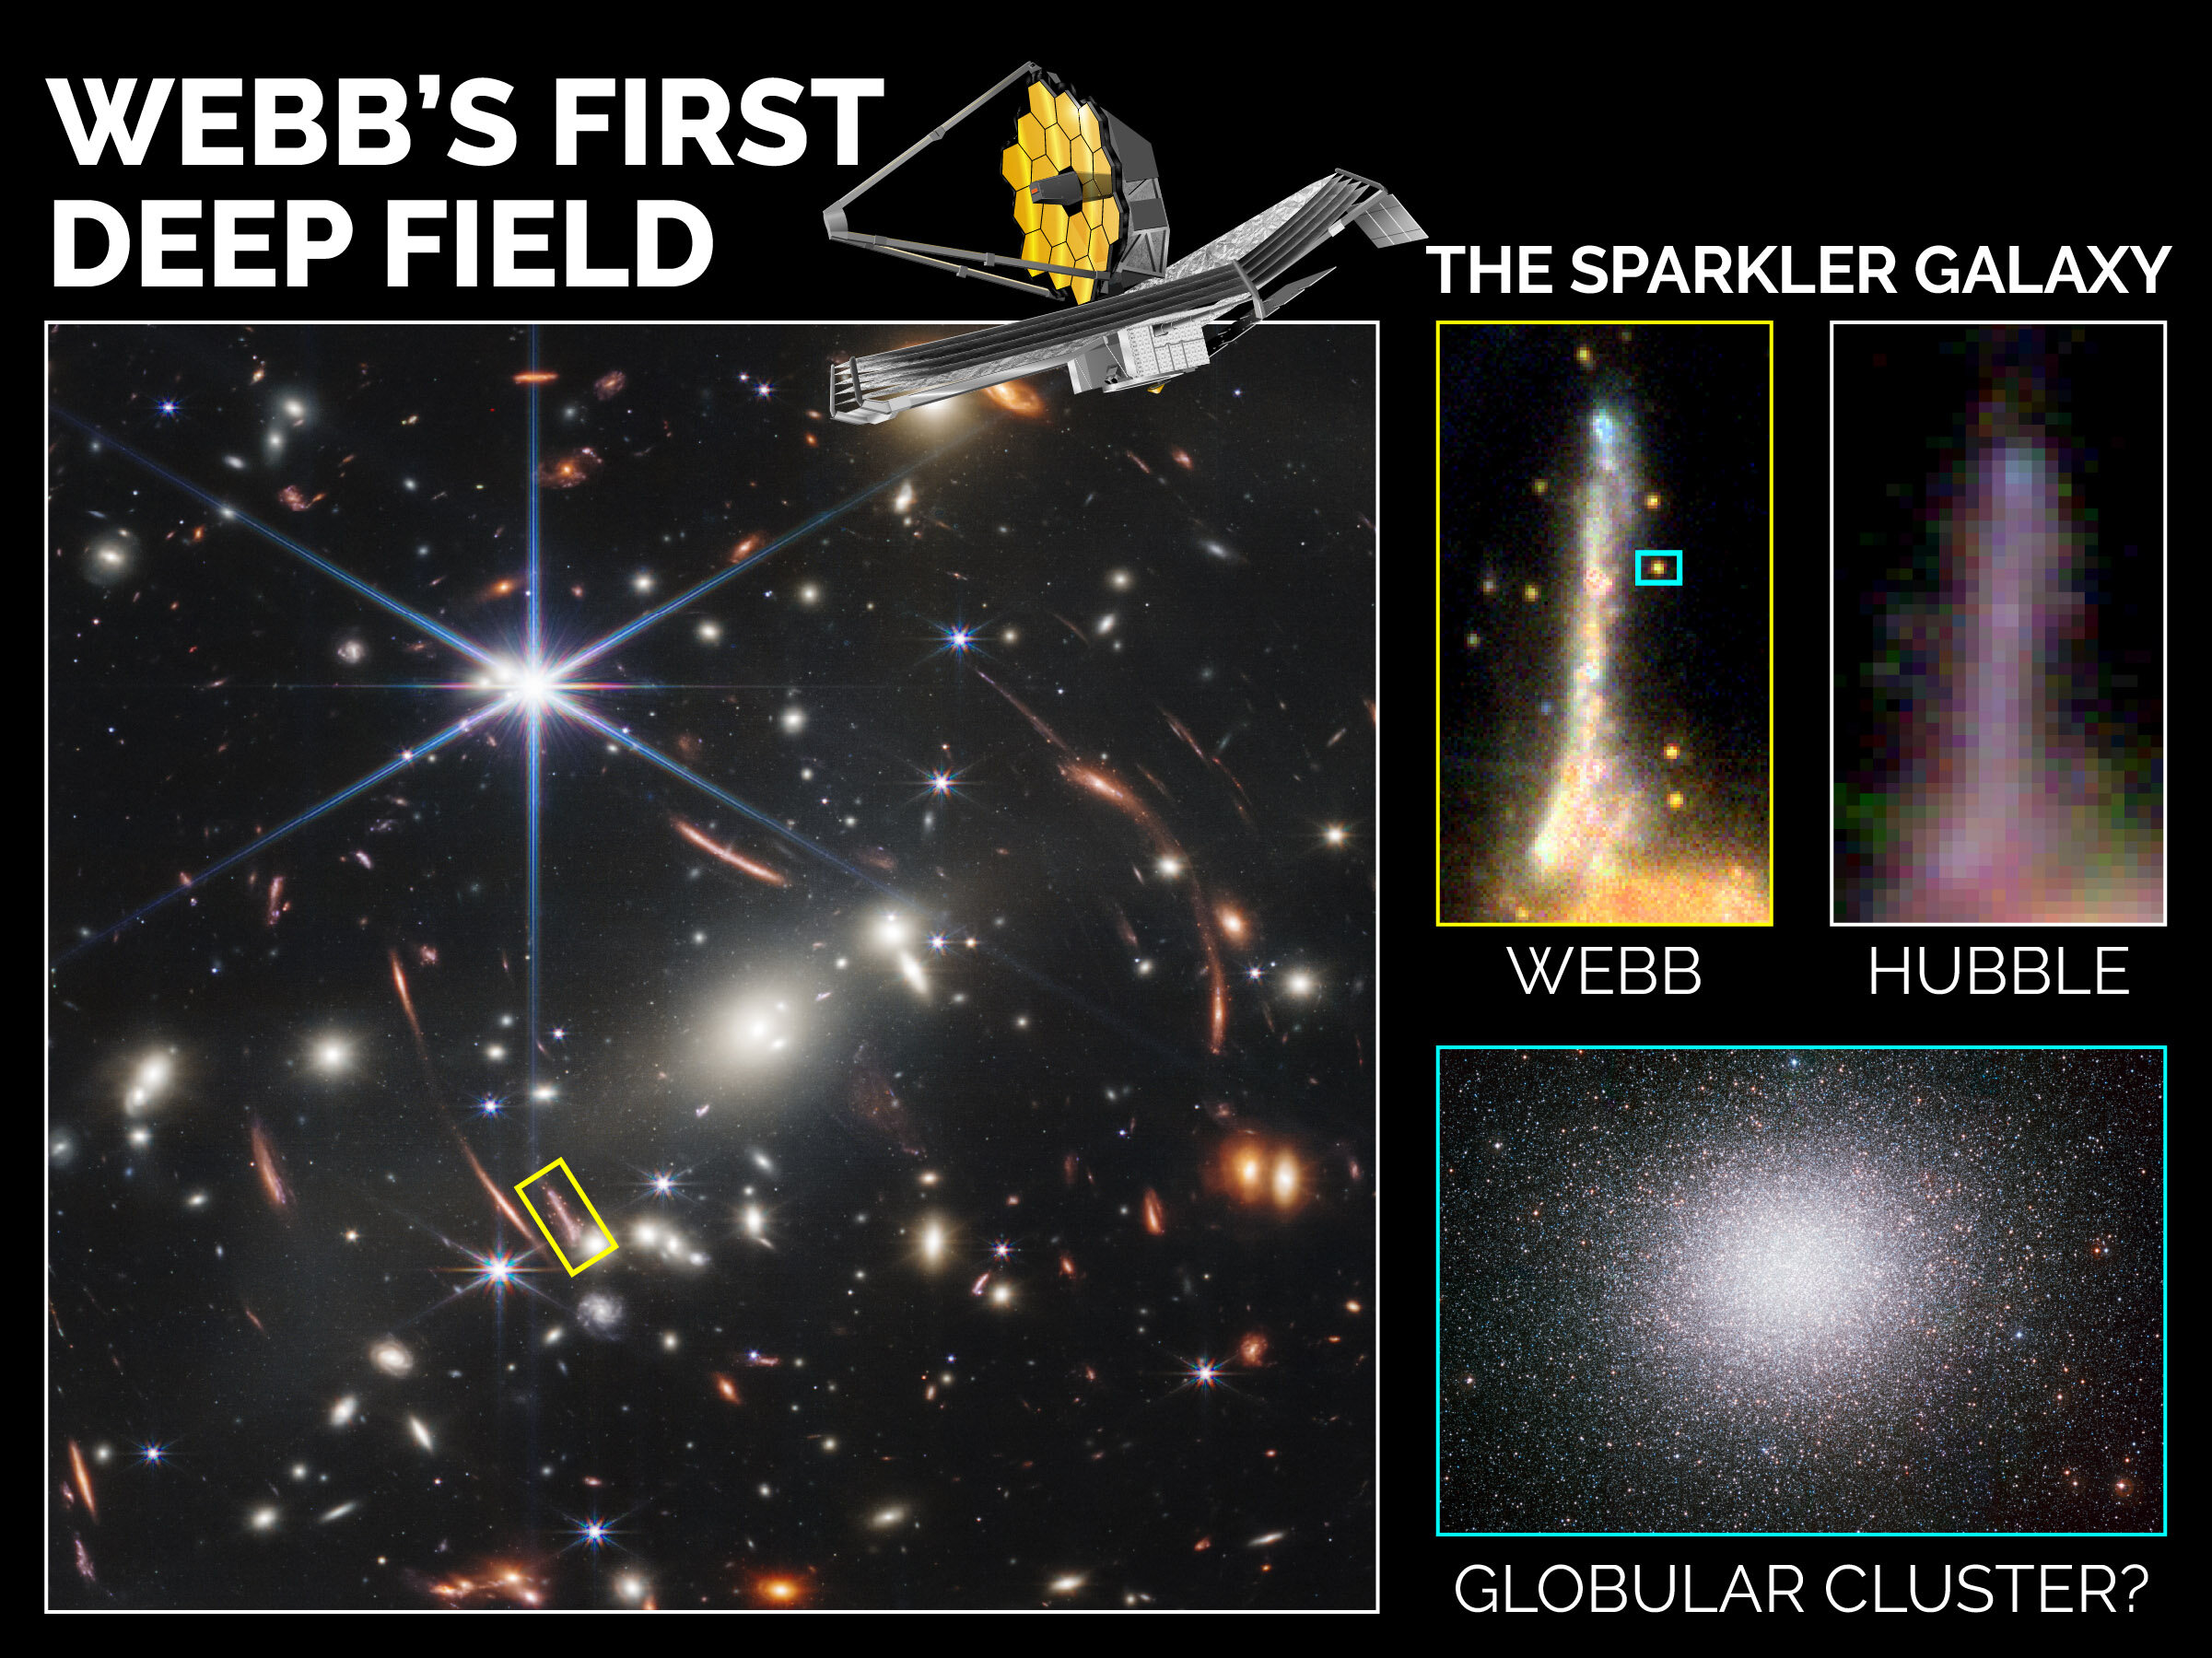 Согласно исследованию, пять сверкающих объектов, расположенных вокруг галактики Спарклер в Первом глубоком поле Уэбба, представляют собой шаровые скопления. Предоставлено: Канадское космическое агентство с изображениями из NASA, ESA, CSA, STScI; Маула, Айер и др. 2022